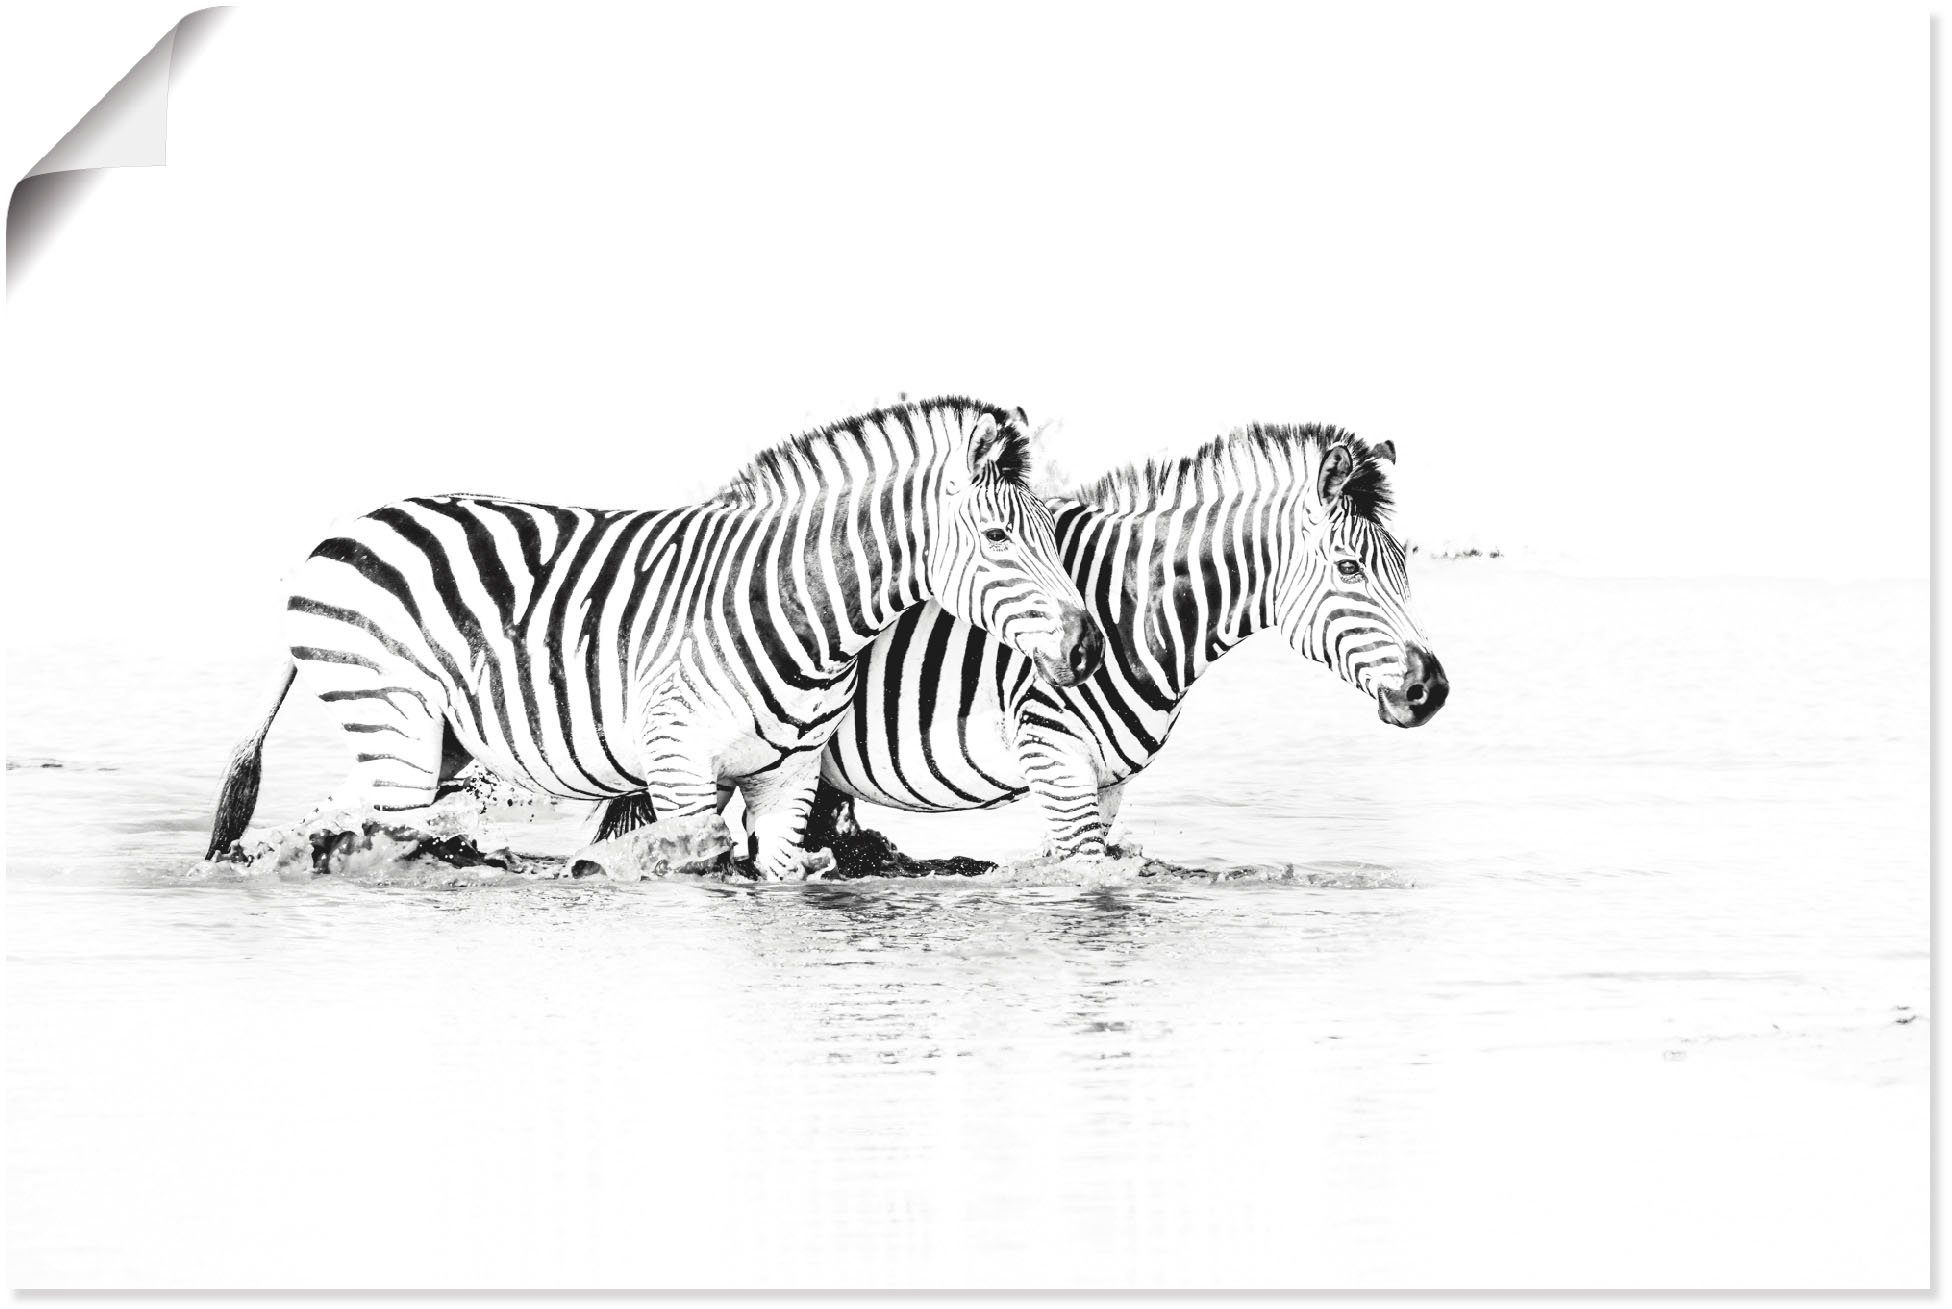 Artland Artprint Zebras parallel im Wasser in vele afmetingen & productsoorten - artprint van aluminium / artprint voor buiten, artprint op linnen, poster, muursticker / wandfolie